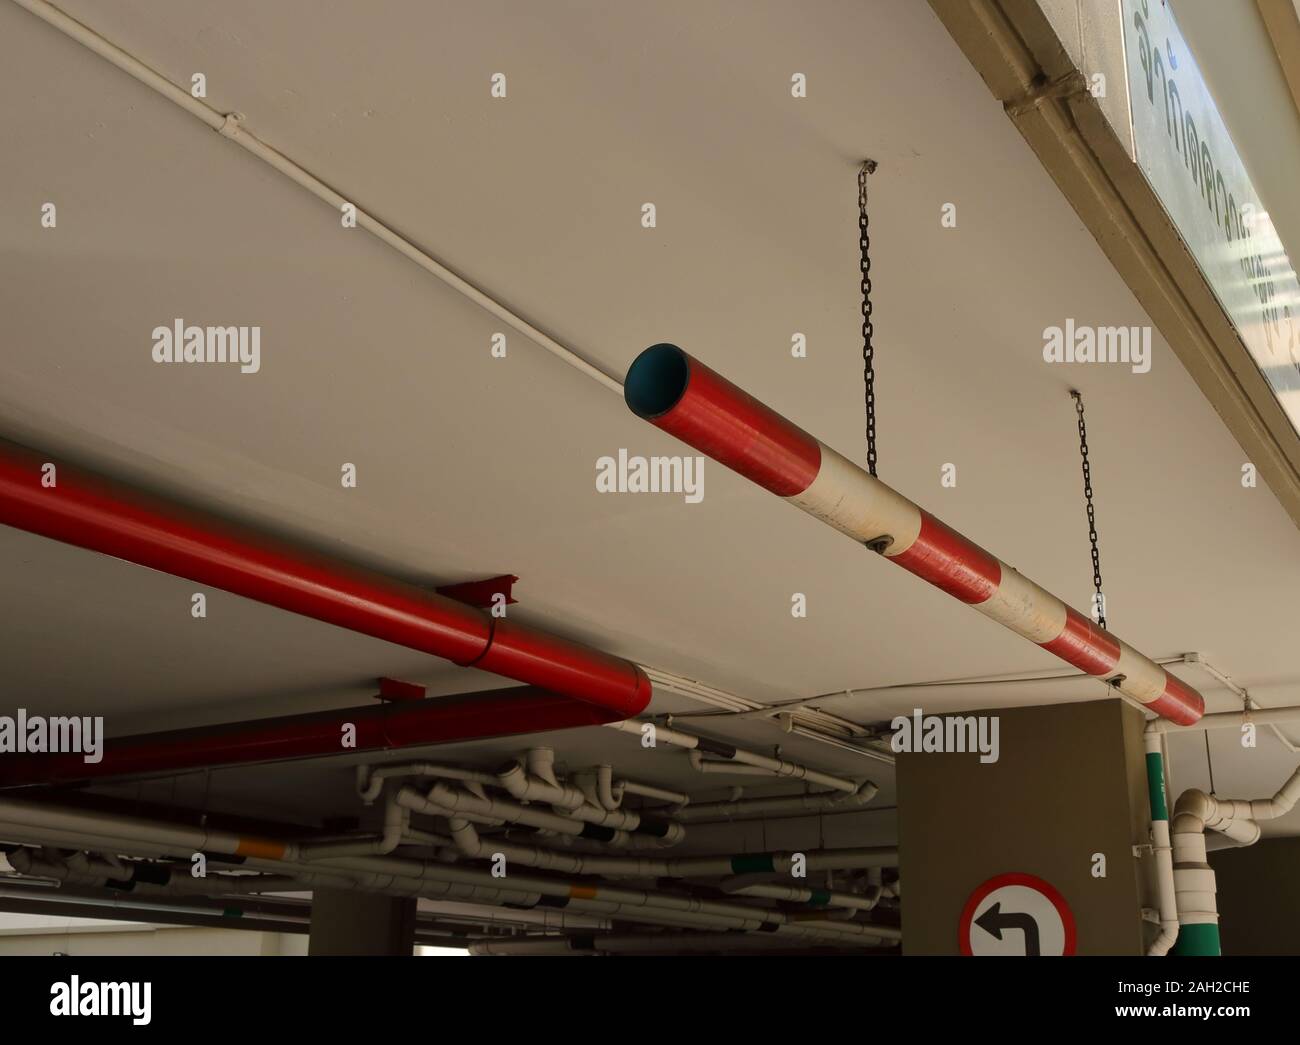 Primo piano auto restrizione altezza segno costituito da un tubo in PVC verniciato con colore rosso e bianco, pendenti dal soffitto da catene presso il parcheggio ingresso Foto Stock